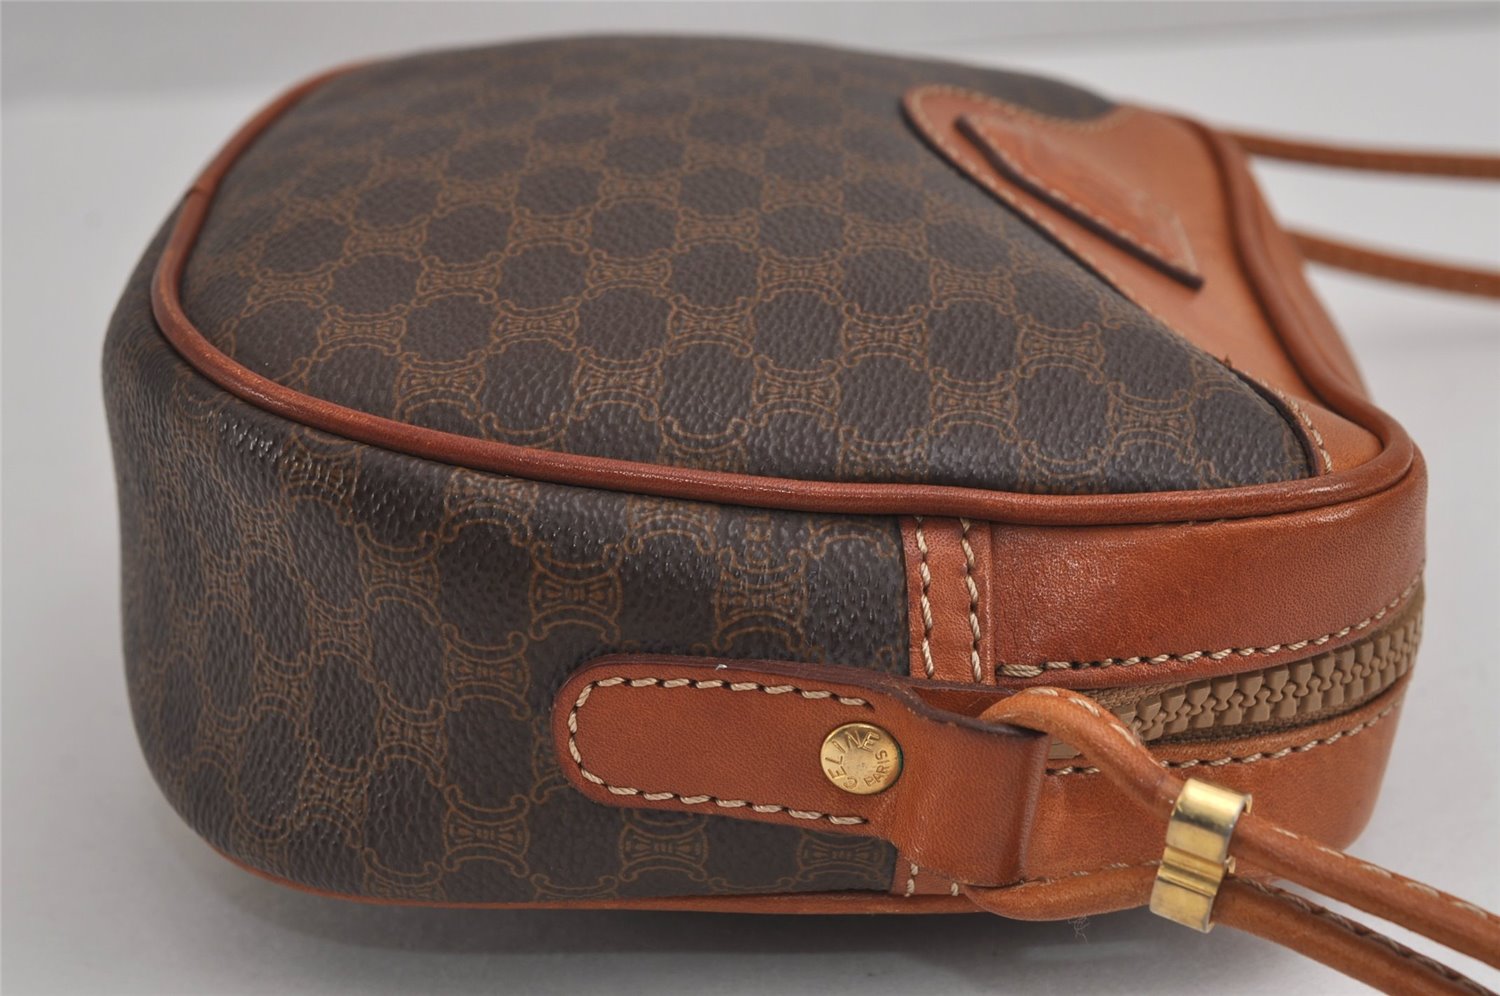 Authentic CELINE Macadam Blason Shoulder Cross Bag Purse PVC Leather Brown 6864J